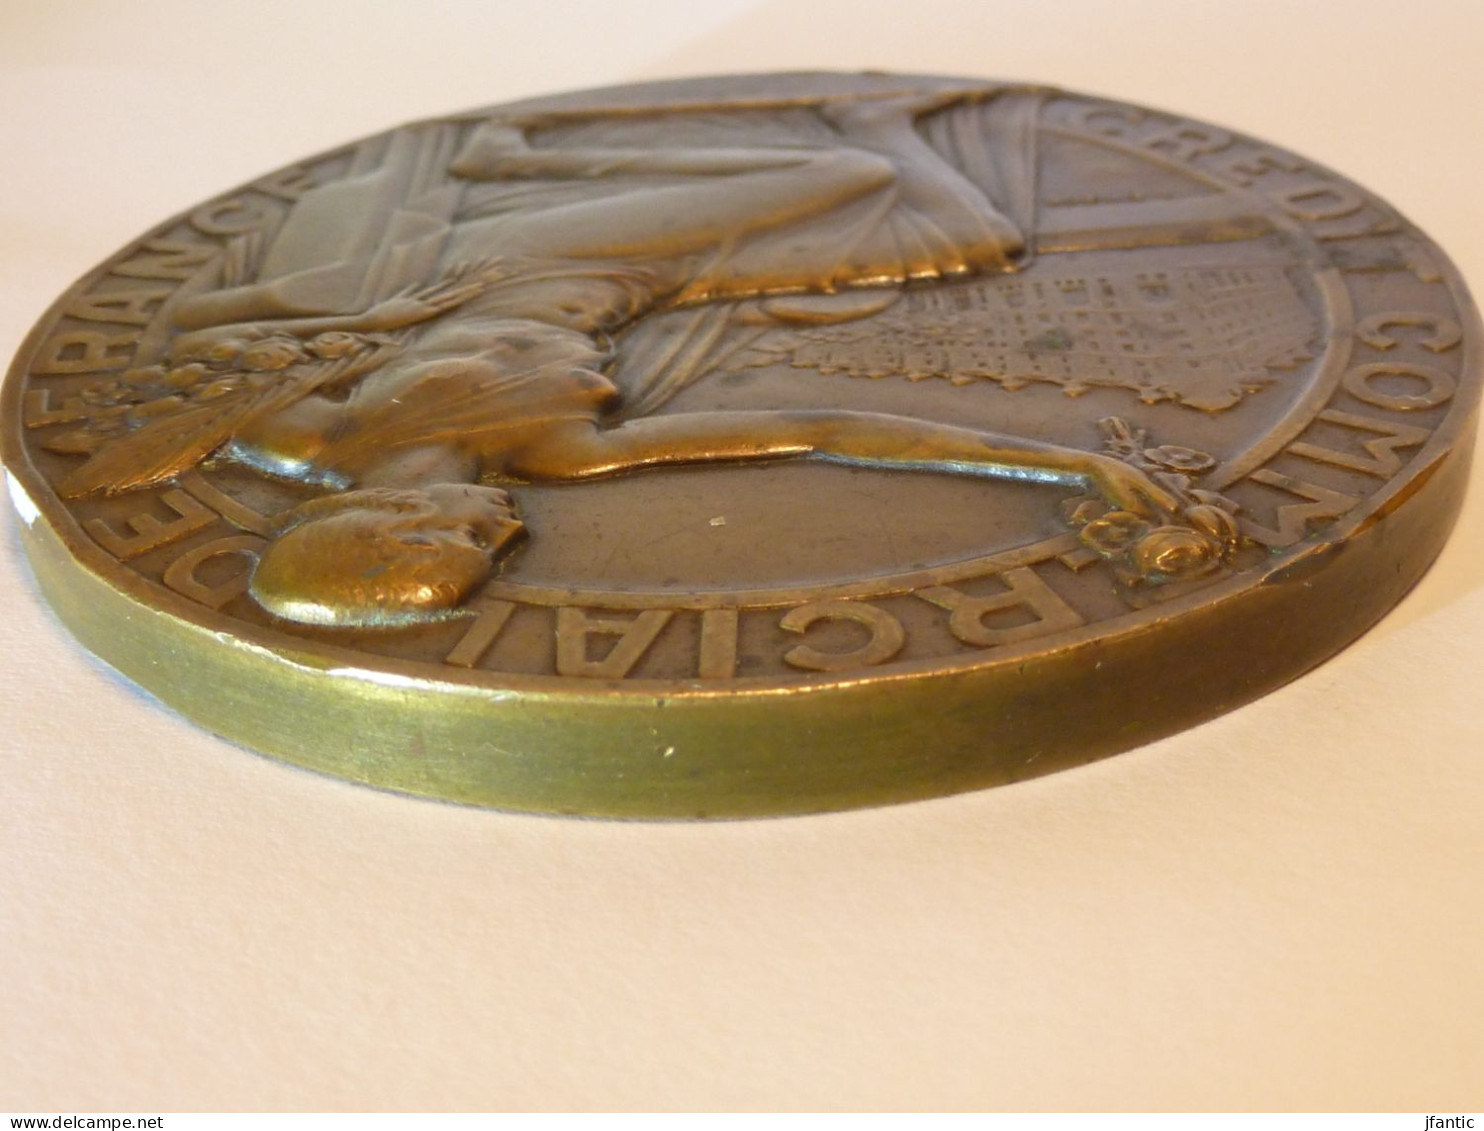 L.Bazor, crédit commercial de France, souvenir d'une collaboration,médaille,medal, banque. année 1945.